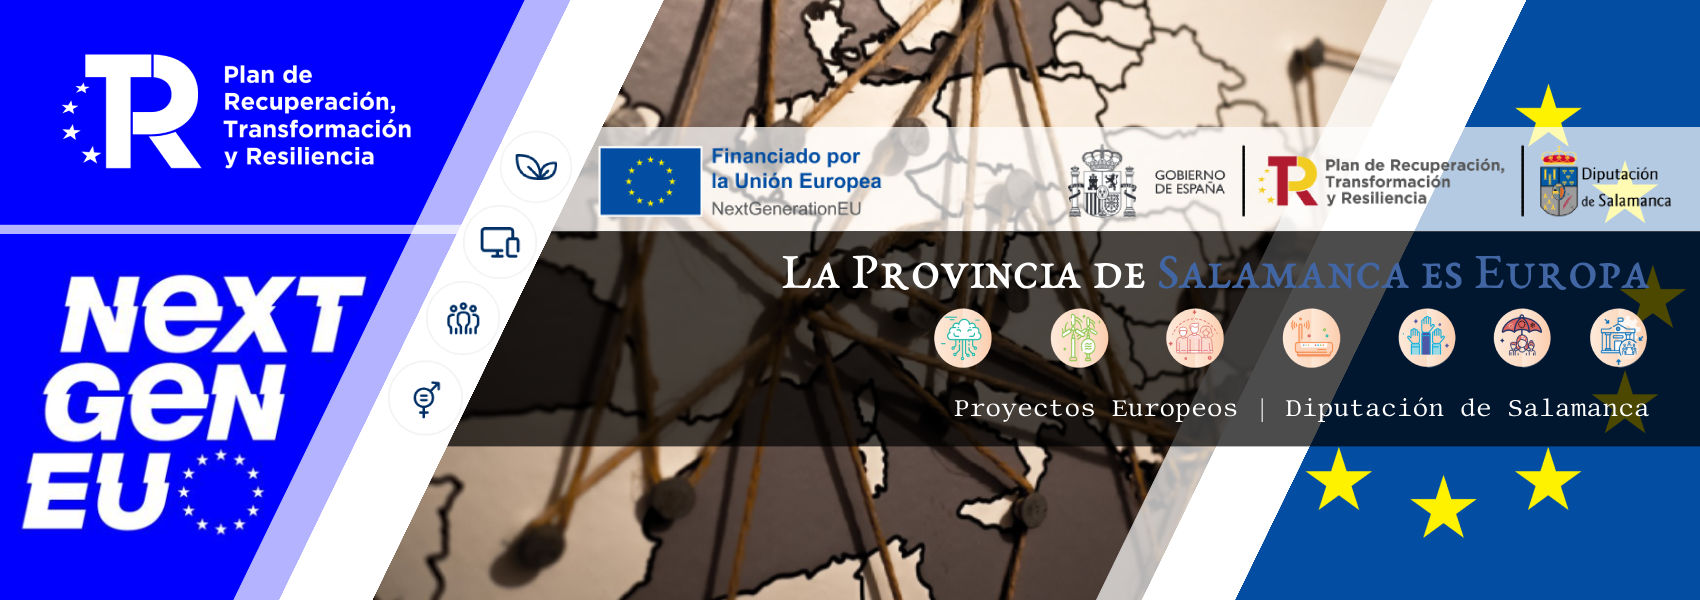 Imagen de cabecera sobre los proyectos europeos - Diputación de Salamanca